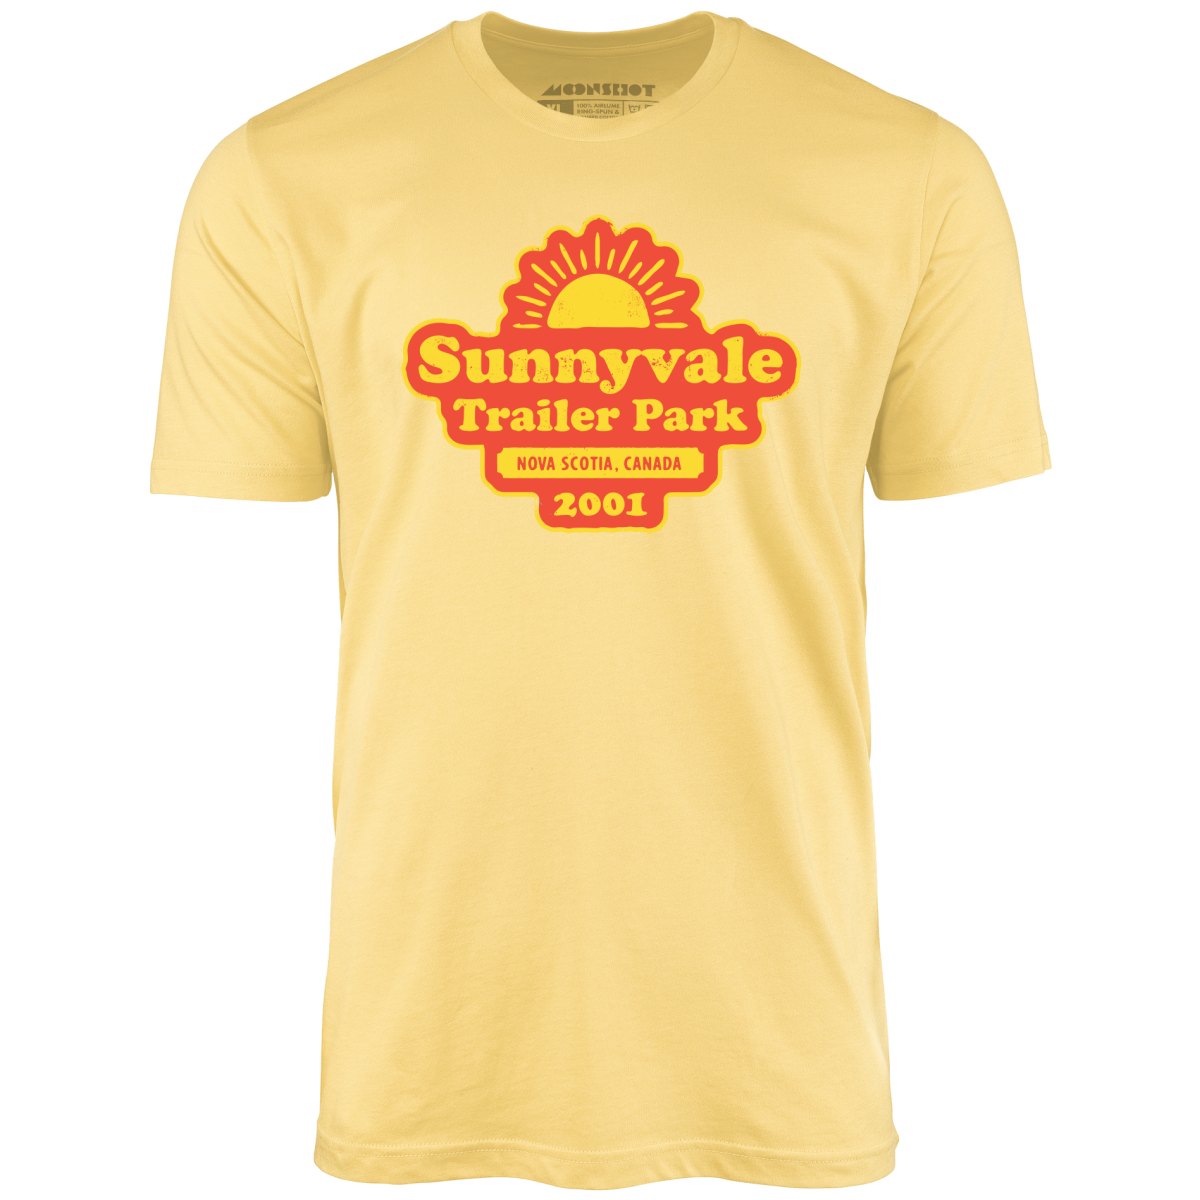 Sunnyvale Trailer Park - Unisex T-Shirt